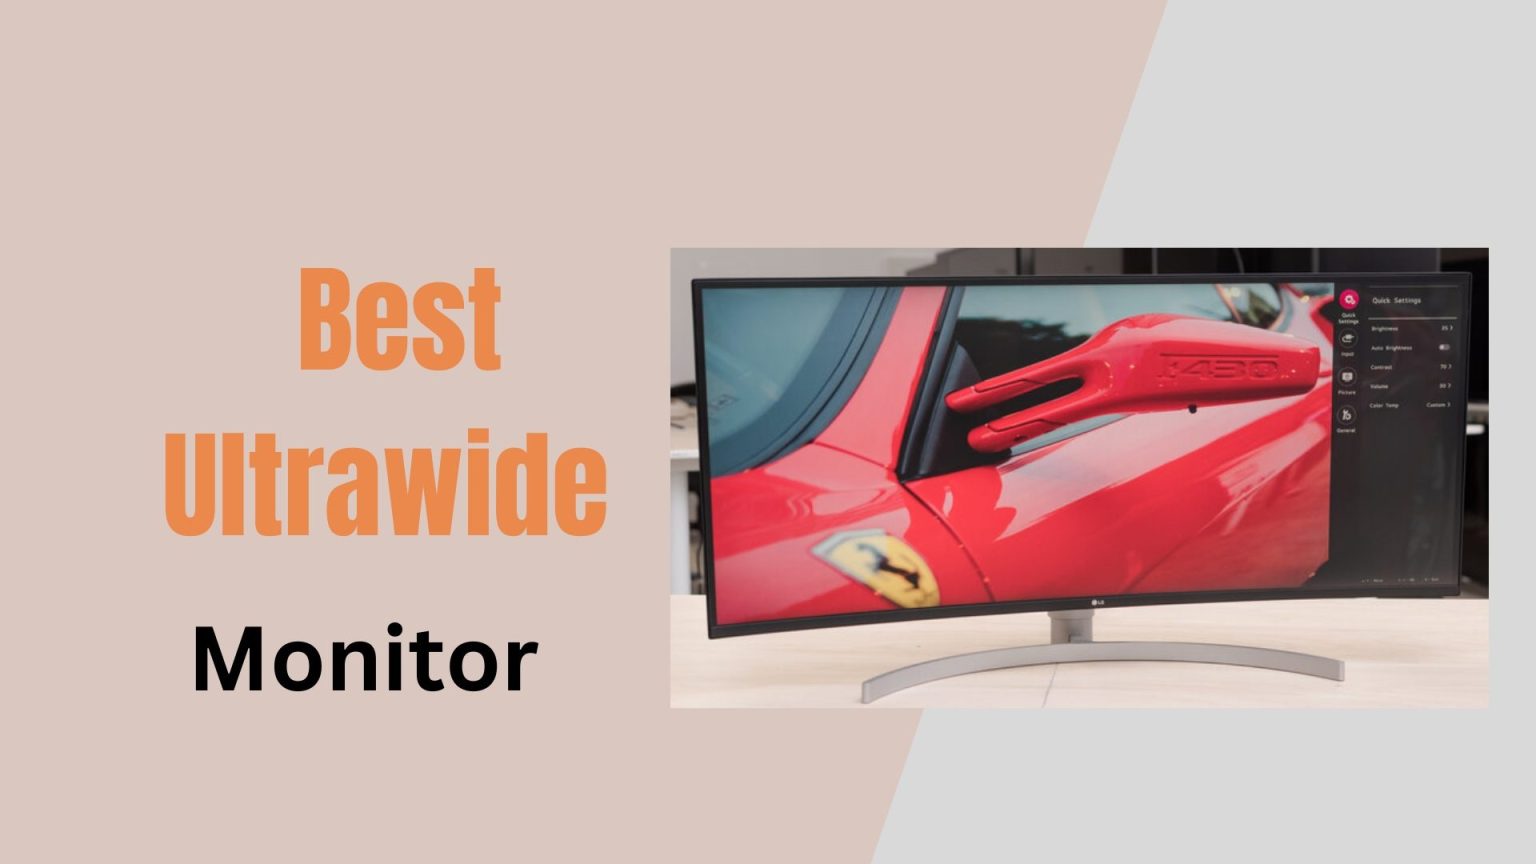 Best ultrawide monitor